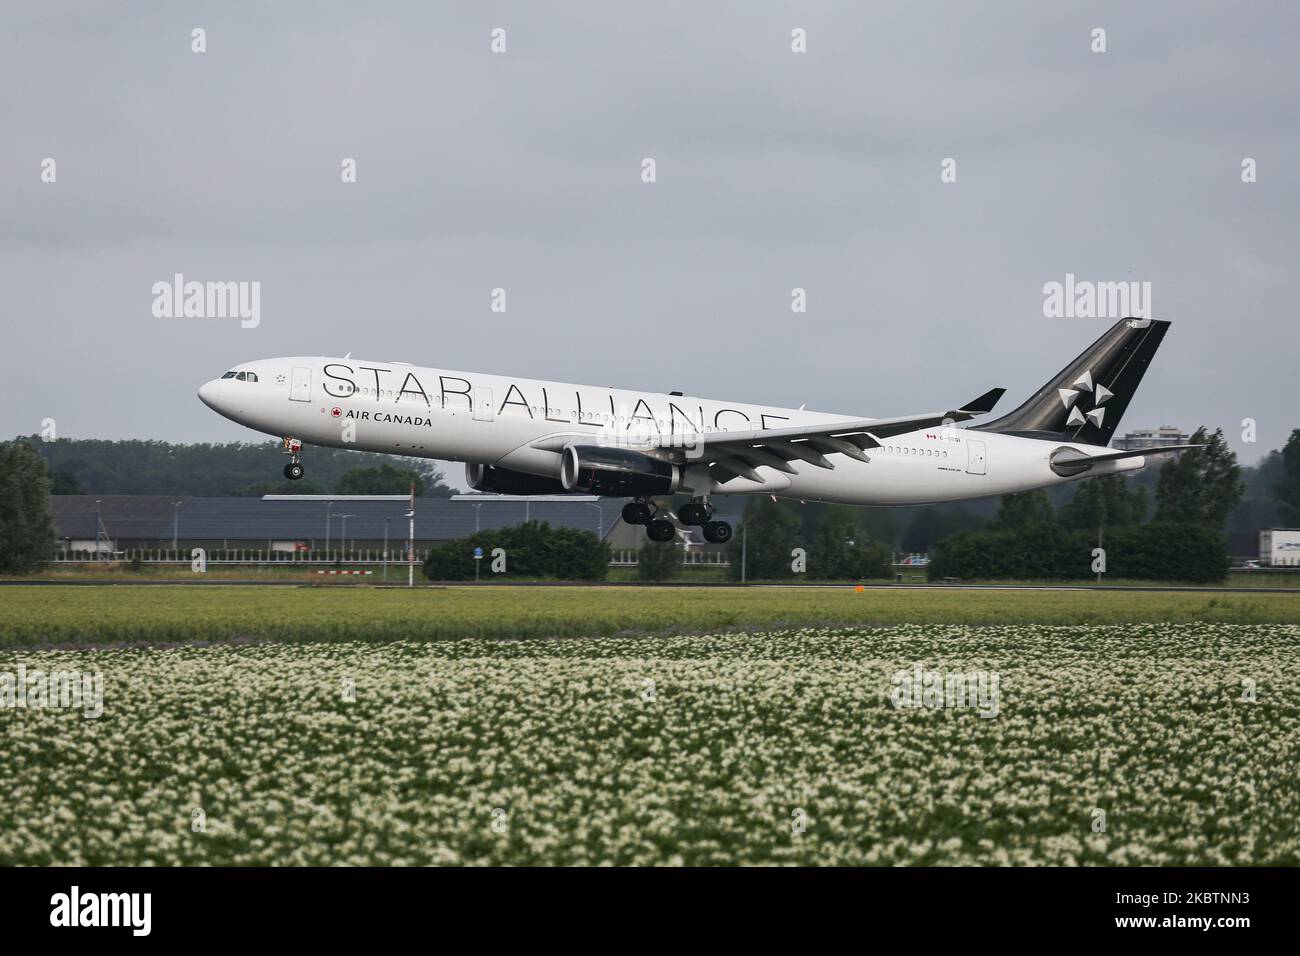 Airbus A330 d'Air Canada avec l'apparence spéciale de l'équipe d'aviation  de Star Alliance comme vu arriver sur l'approche finale vol, atterrissage  et toucher sur la piste à l'aéroport international EHAM Amsterdam Schiphol